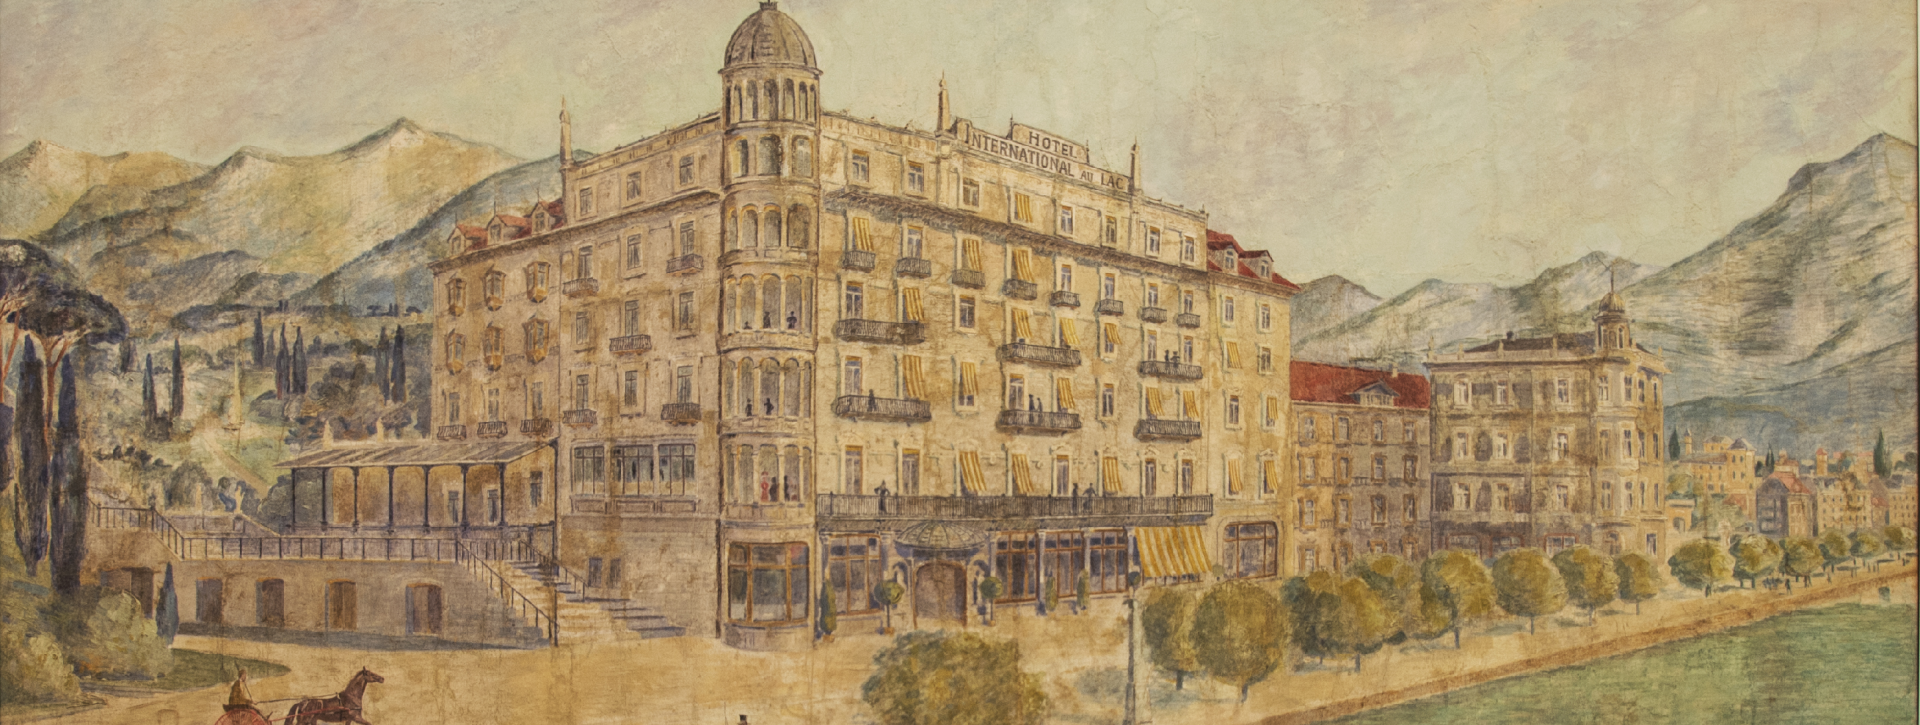 Gemälde des Hotels